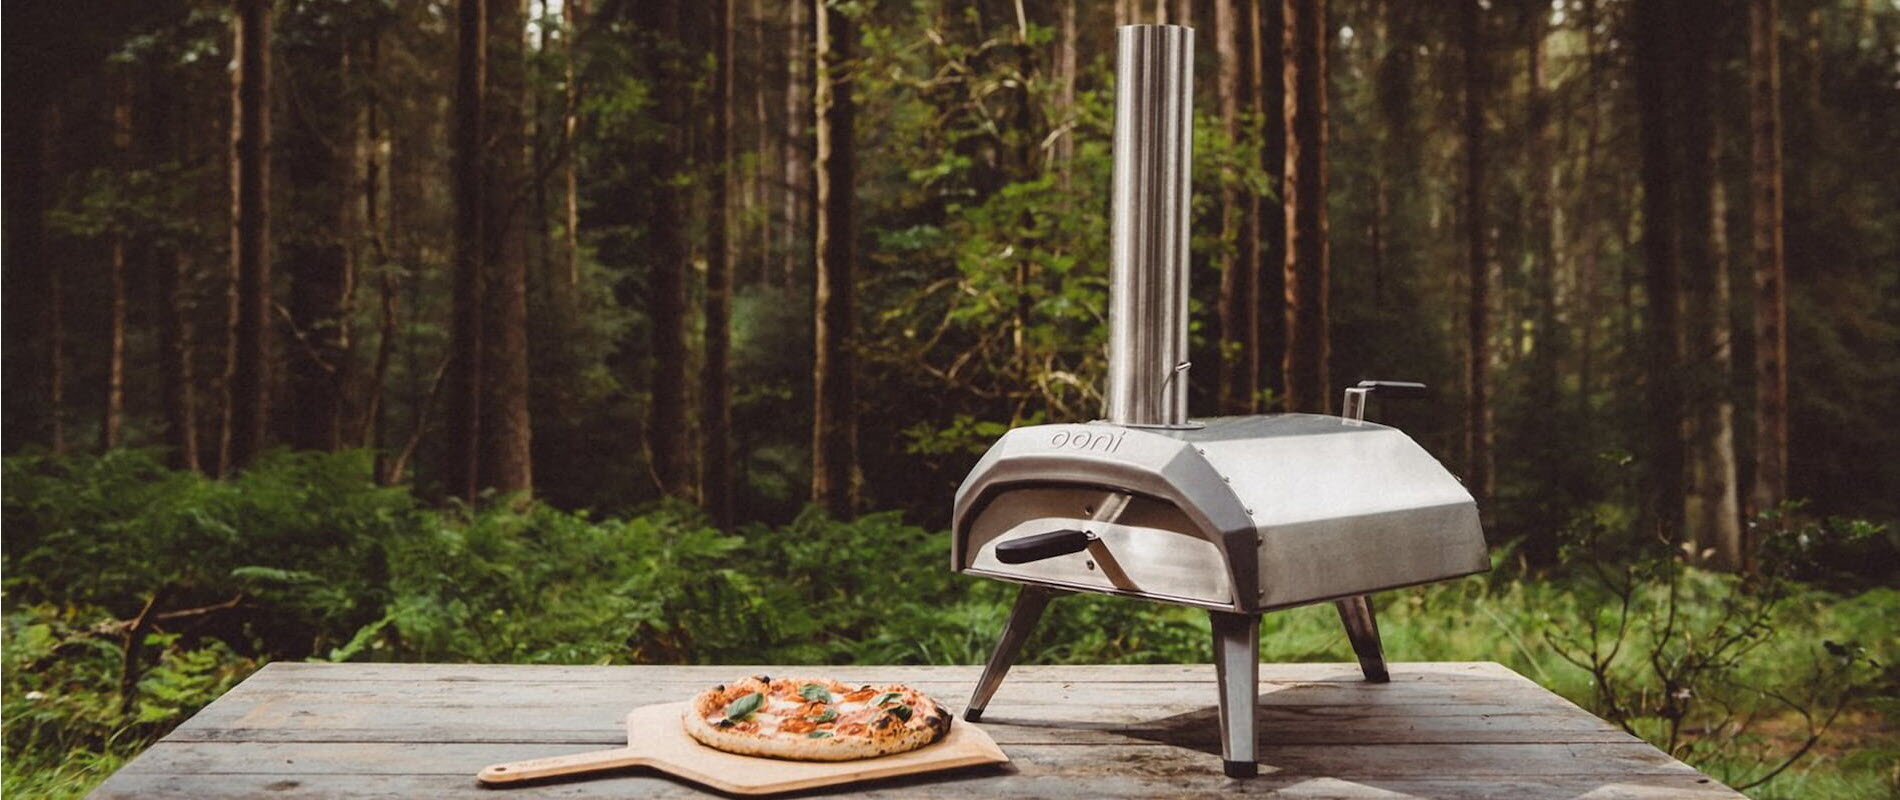 En pizzaovn som som på et utebord med en pizza ved siden av